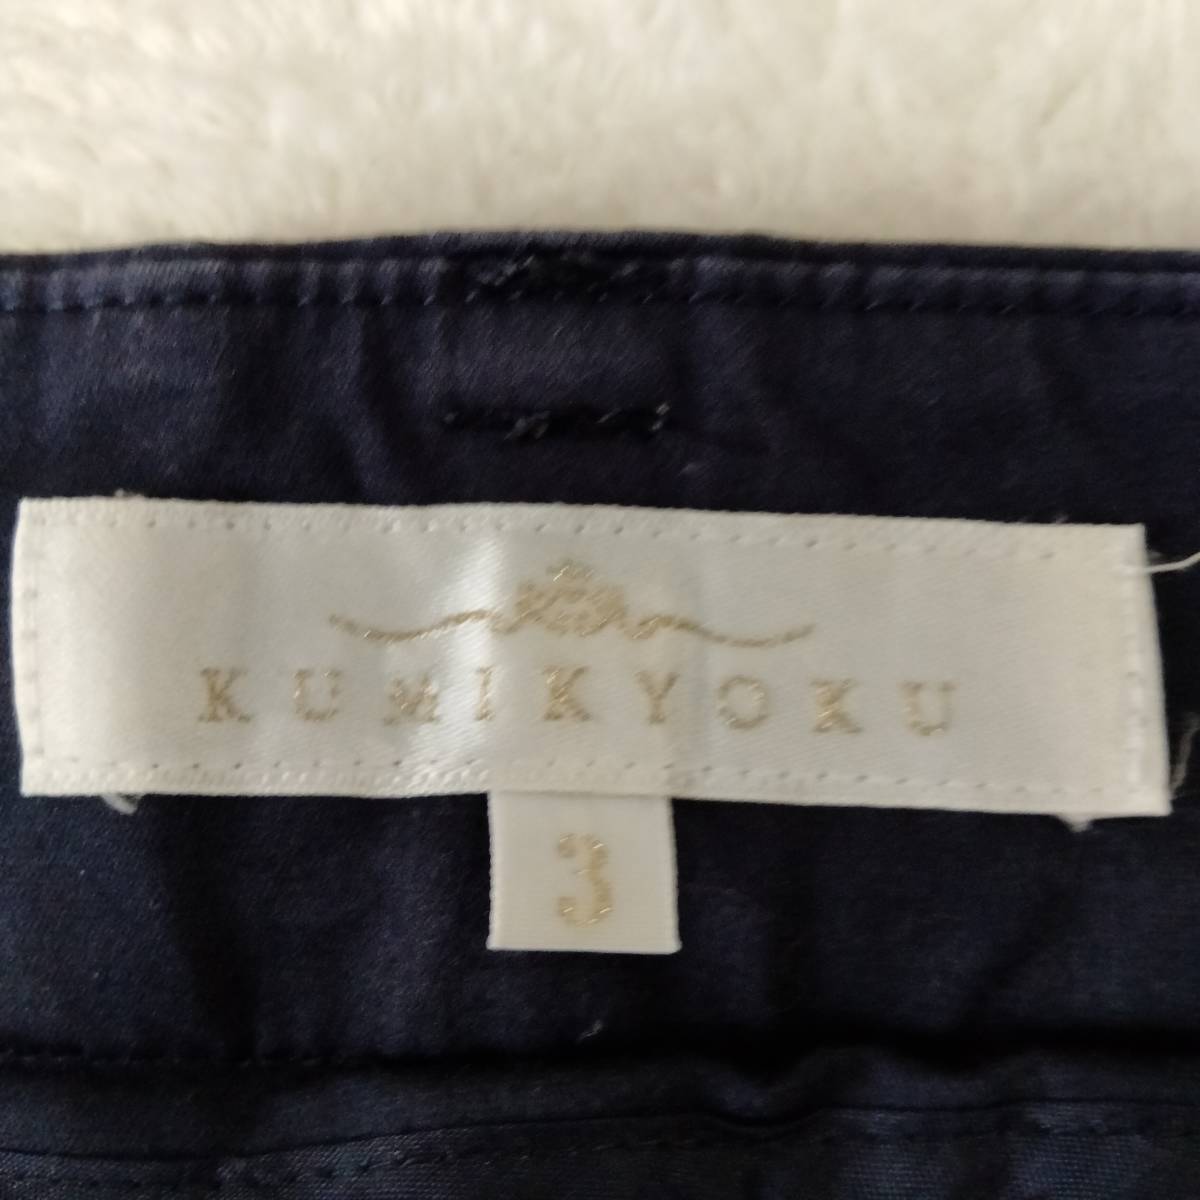 KUMIKYOKU Kumikyoku k Miki .k конические брюки одноцветный слаксы женский низ размер 3 черный SJ111